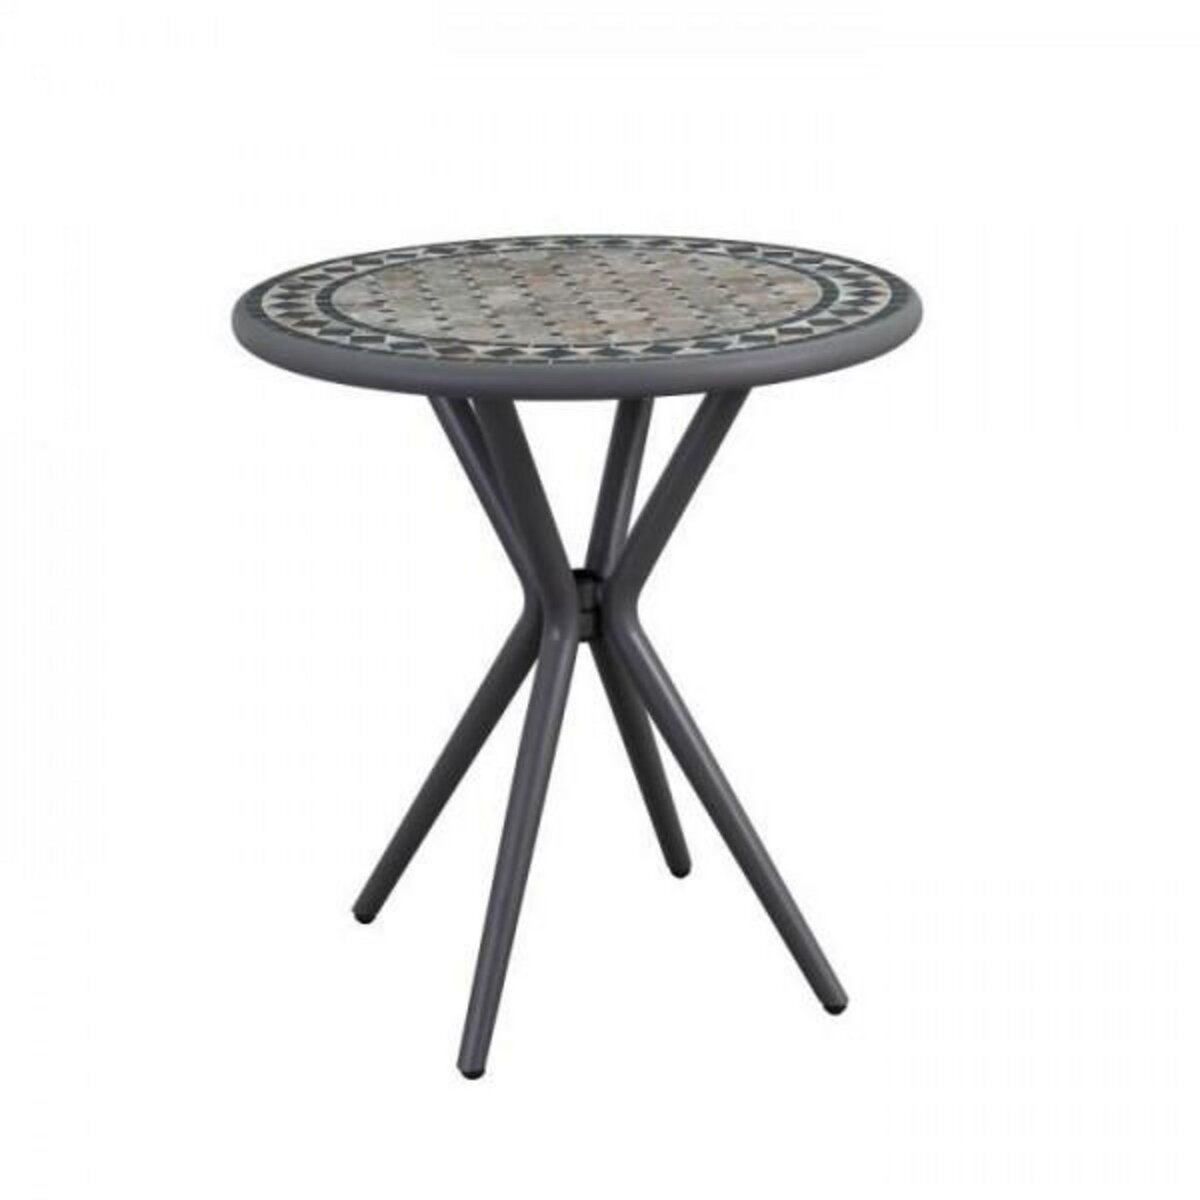 MARKET24 Table Mosaique de jardin - Gris anthracite, céramique noir, marbre jaune - Métal - D 70 cm - Démontable